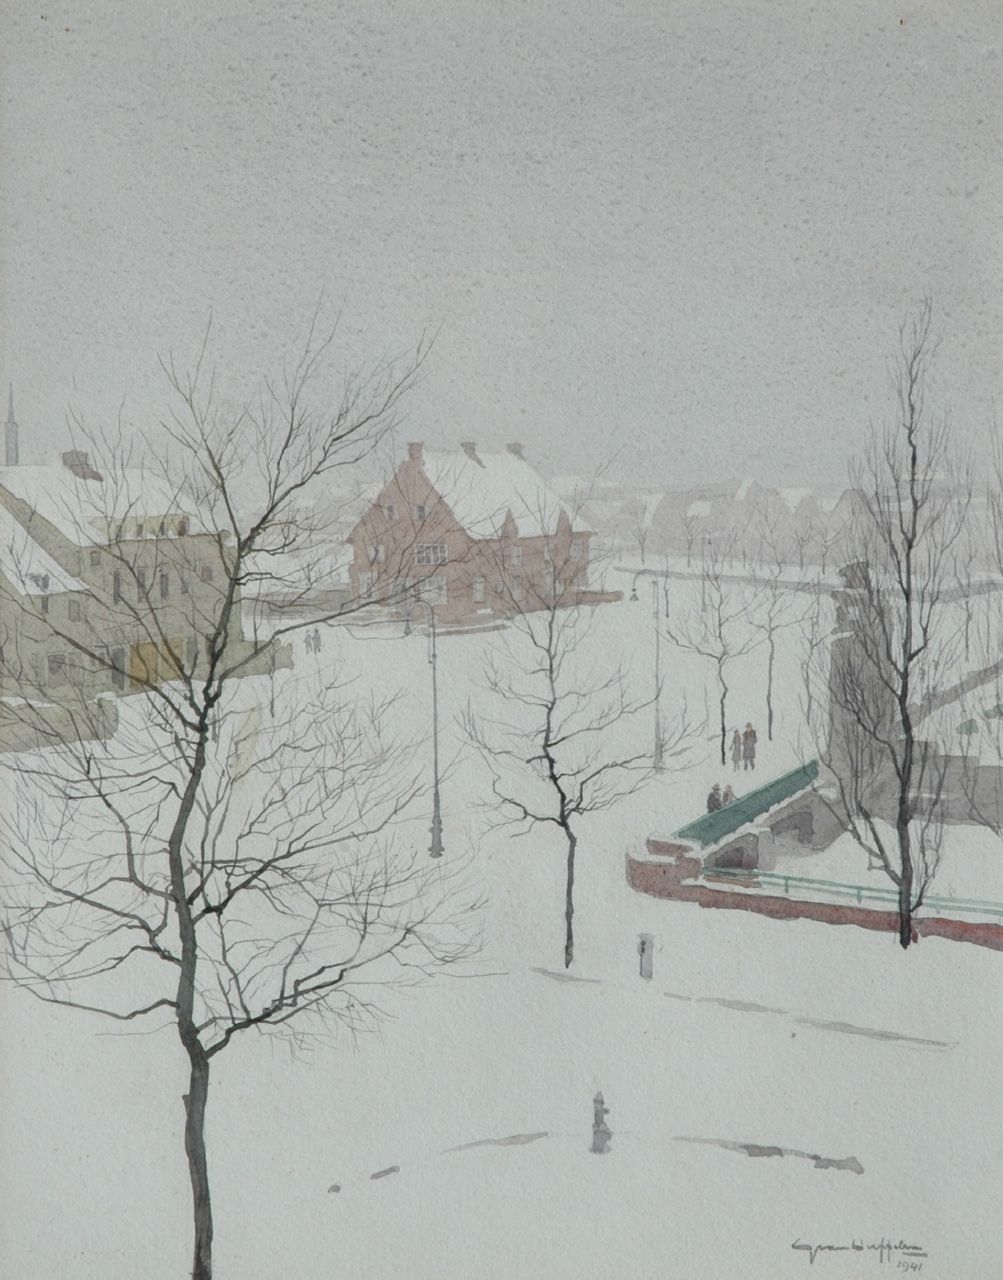 Duffelen G. van | Gerrit van Duffelen, Sneeuw in Amsterdam Zuid, Muzenplein, aquarel op papier 46,5 x 37,7 cm, gesigneerd rechtsonder en gedateerd 1941